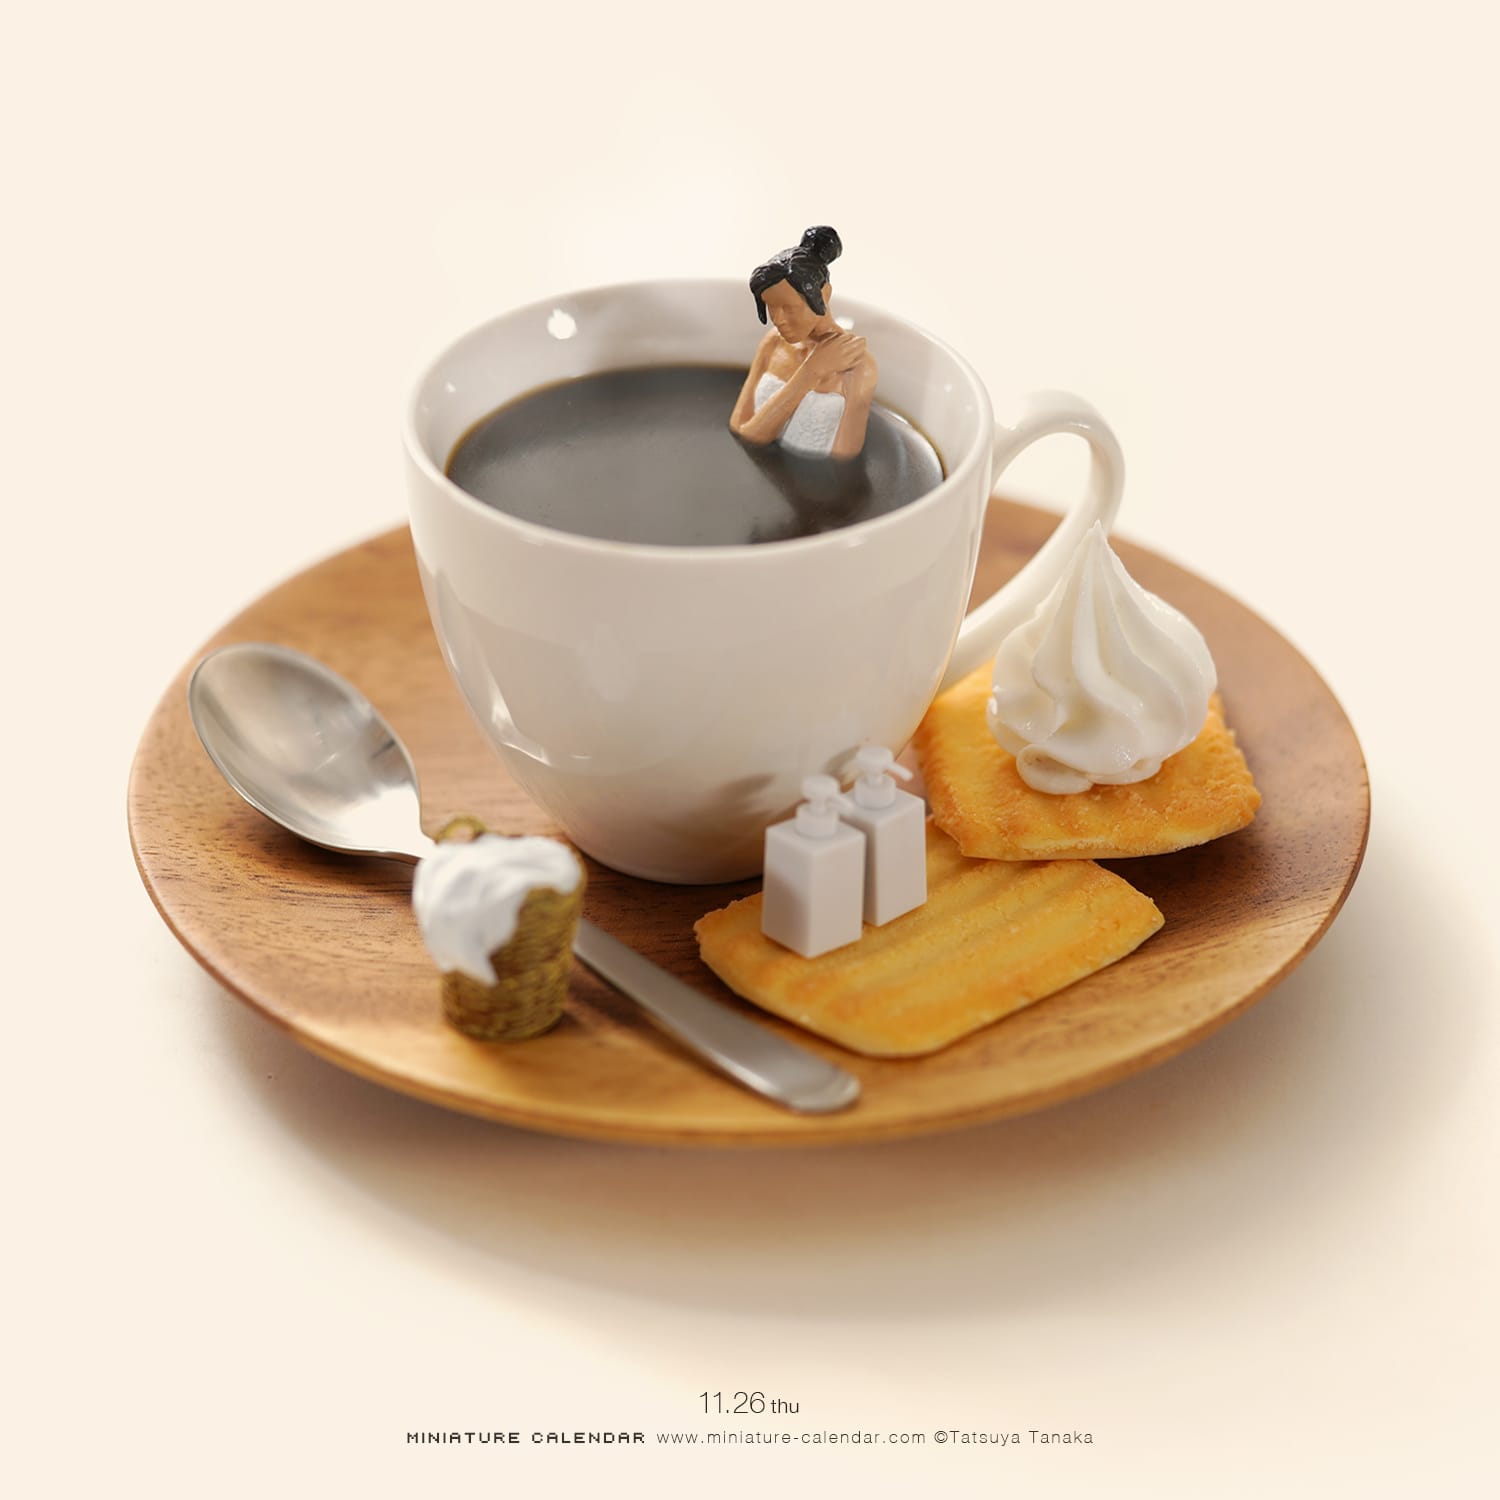 Ce diorama représente une femme qui prend son bain dans une tasse de café.